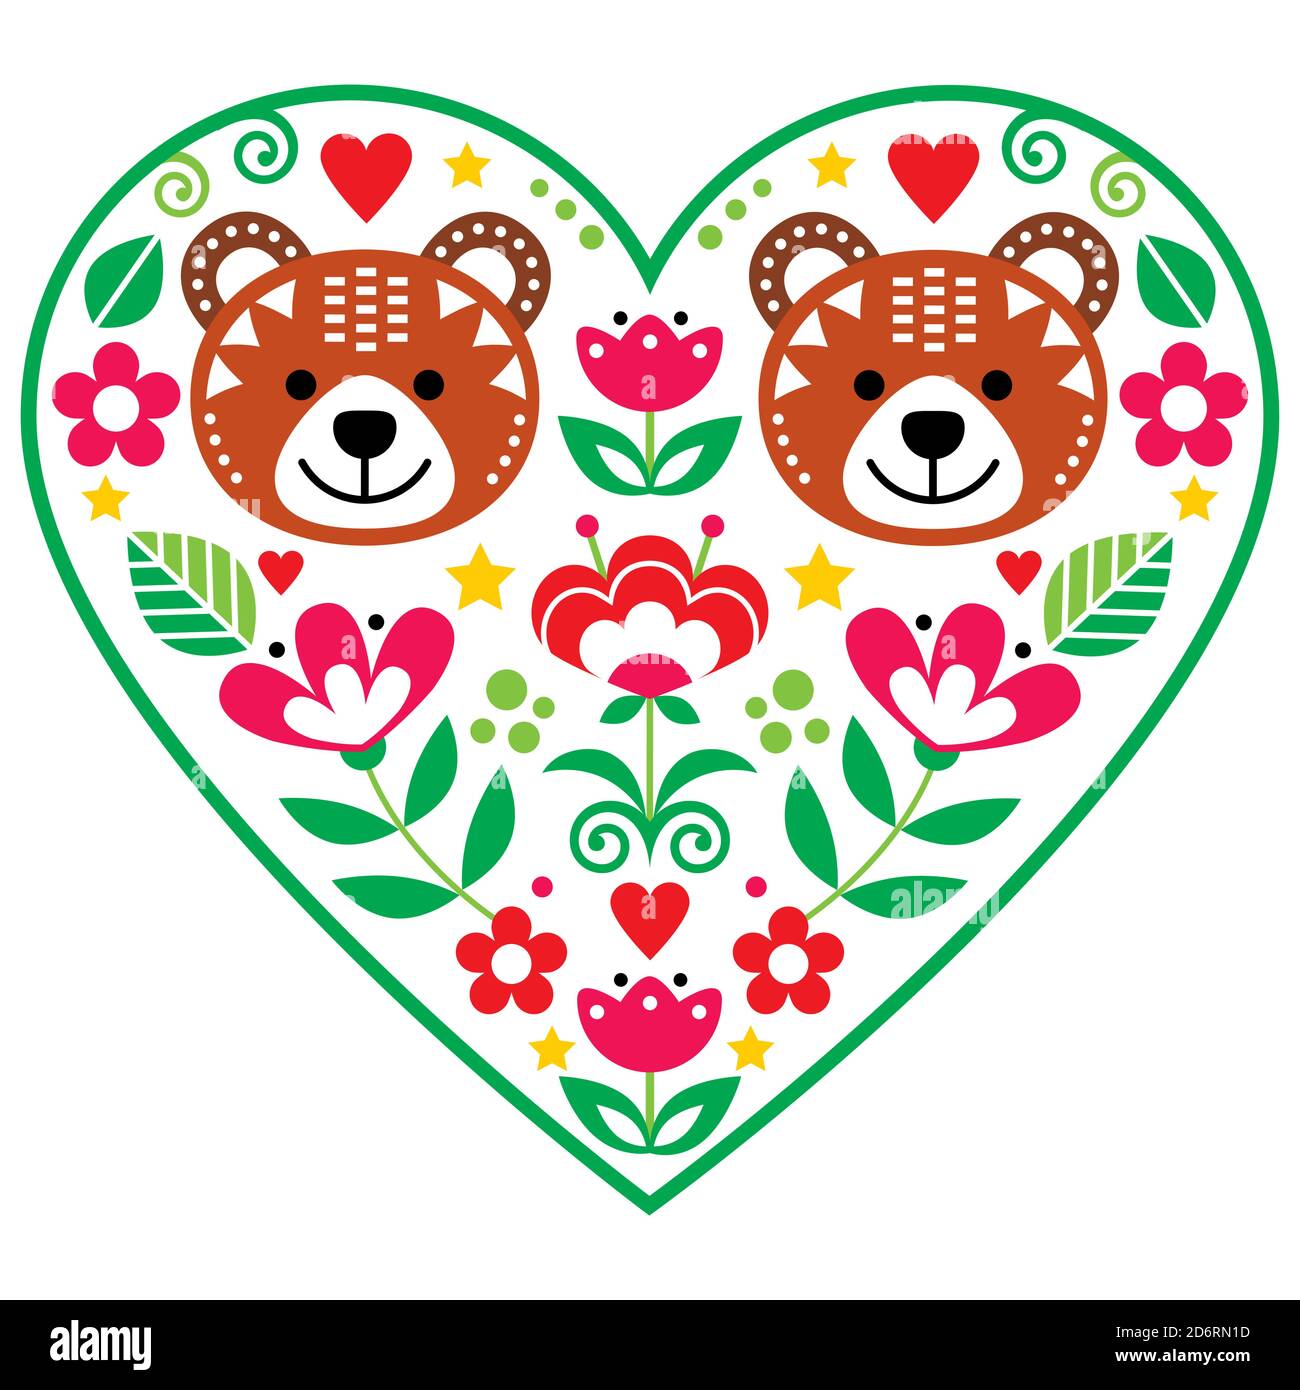 Skandinavisches Herz mit zwei Bären in der Liebe und Blumen Volkskunst Vektor-Design, Valentinstag Blumen Grußkarte oder Hochzeit Einladung Stock Vektor